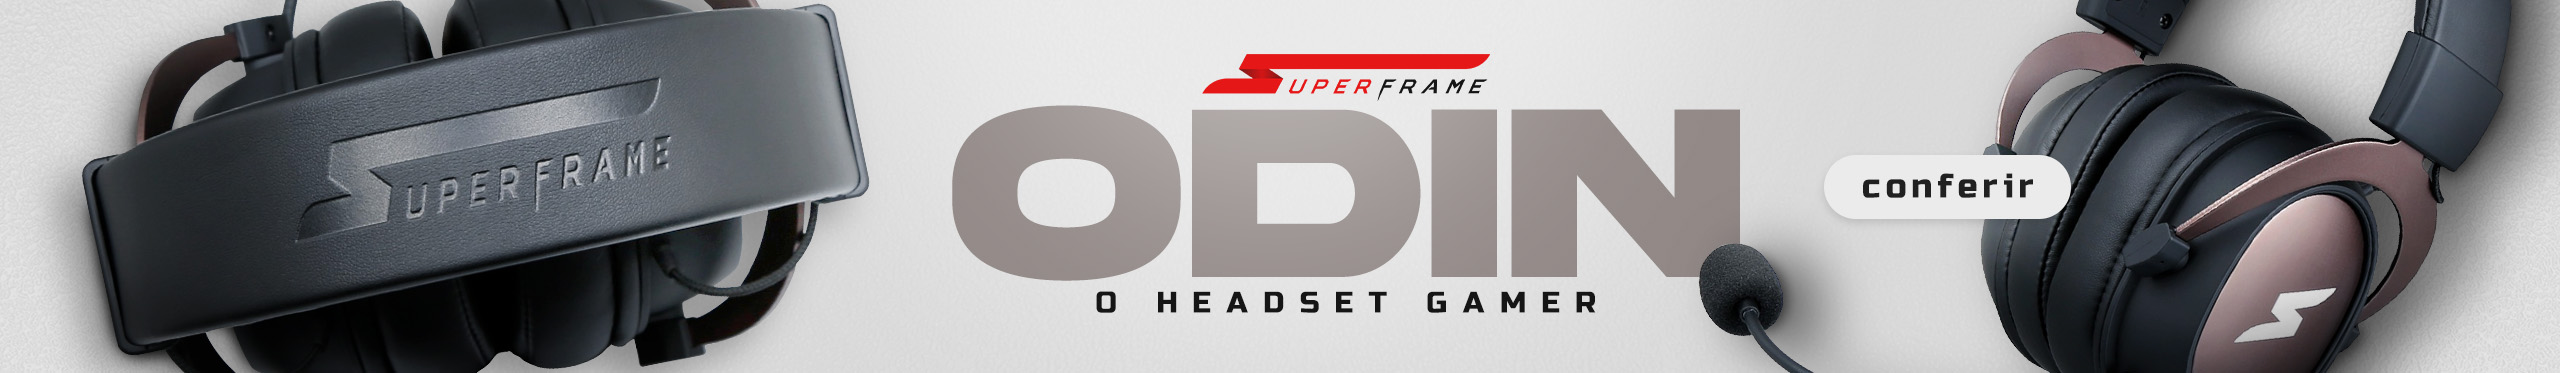 Headset SuperFrame ODIN - Uma verdadeira explosão sonora. Saiba mais!